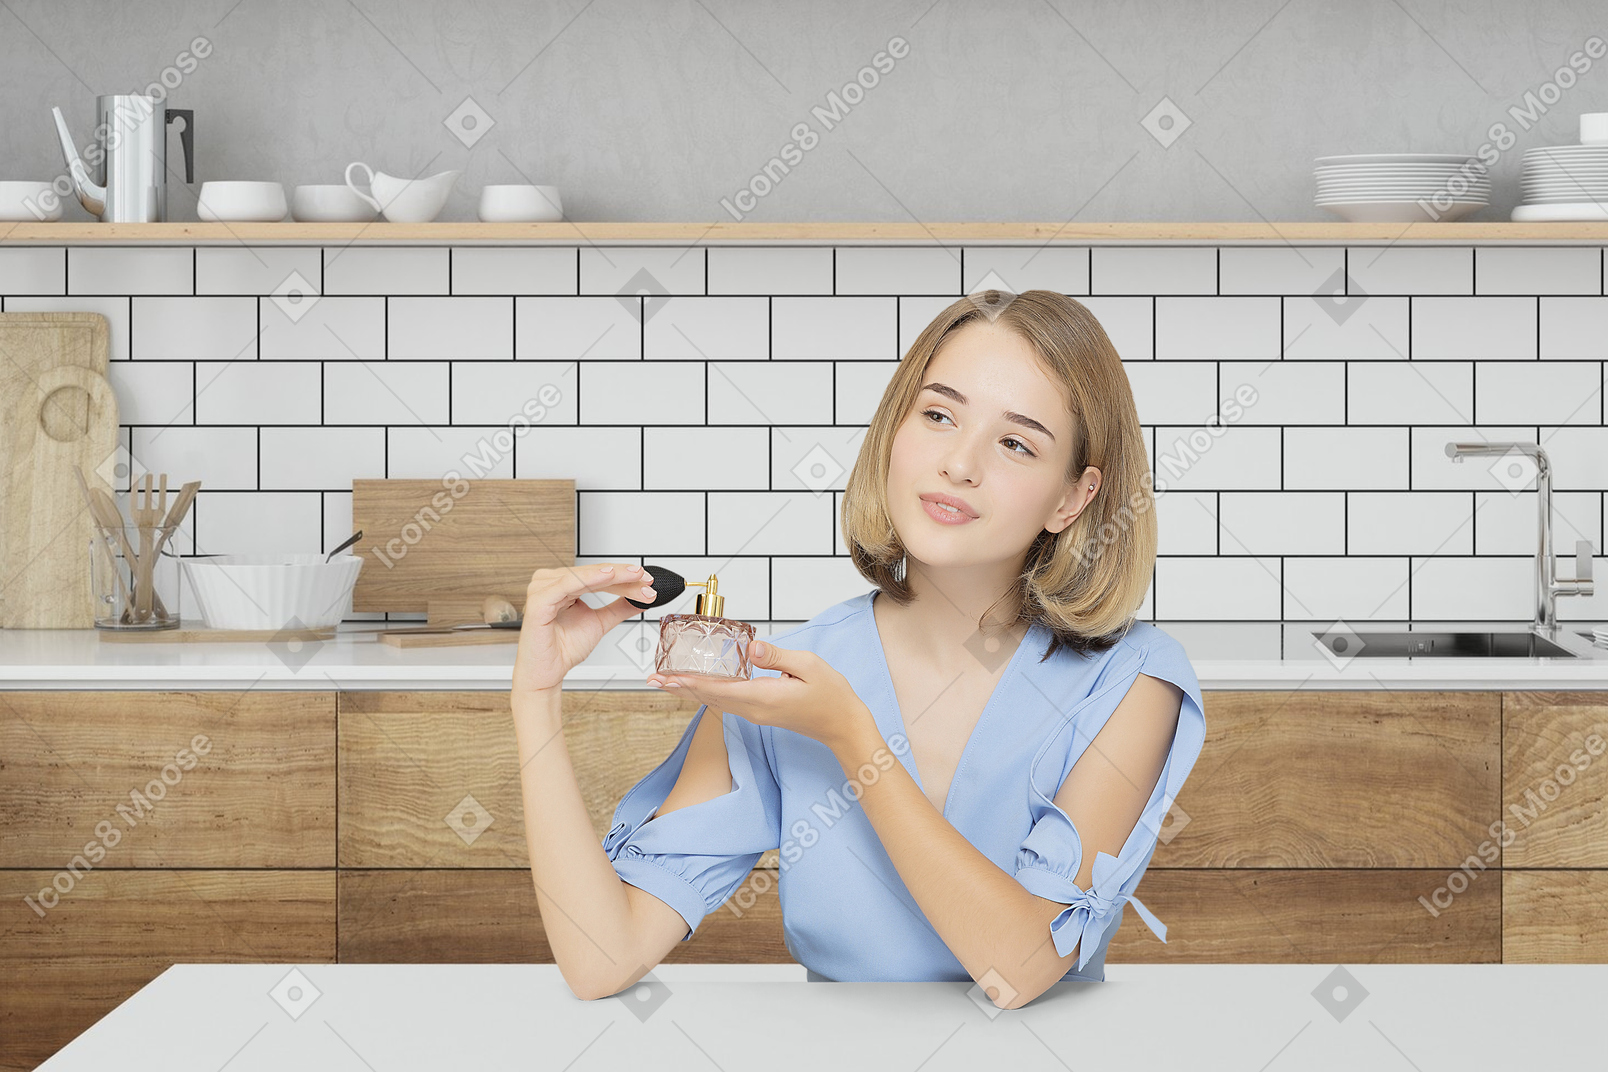 Jeune femme assise dans la cuisine et tenant une bouteille de parfum